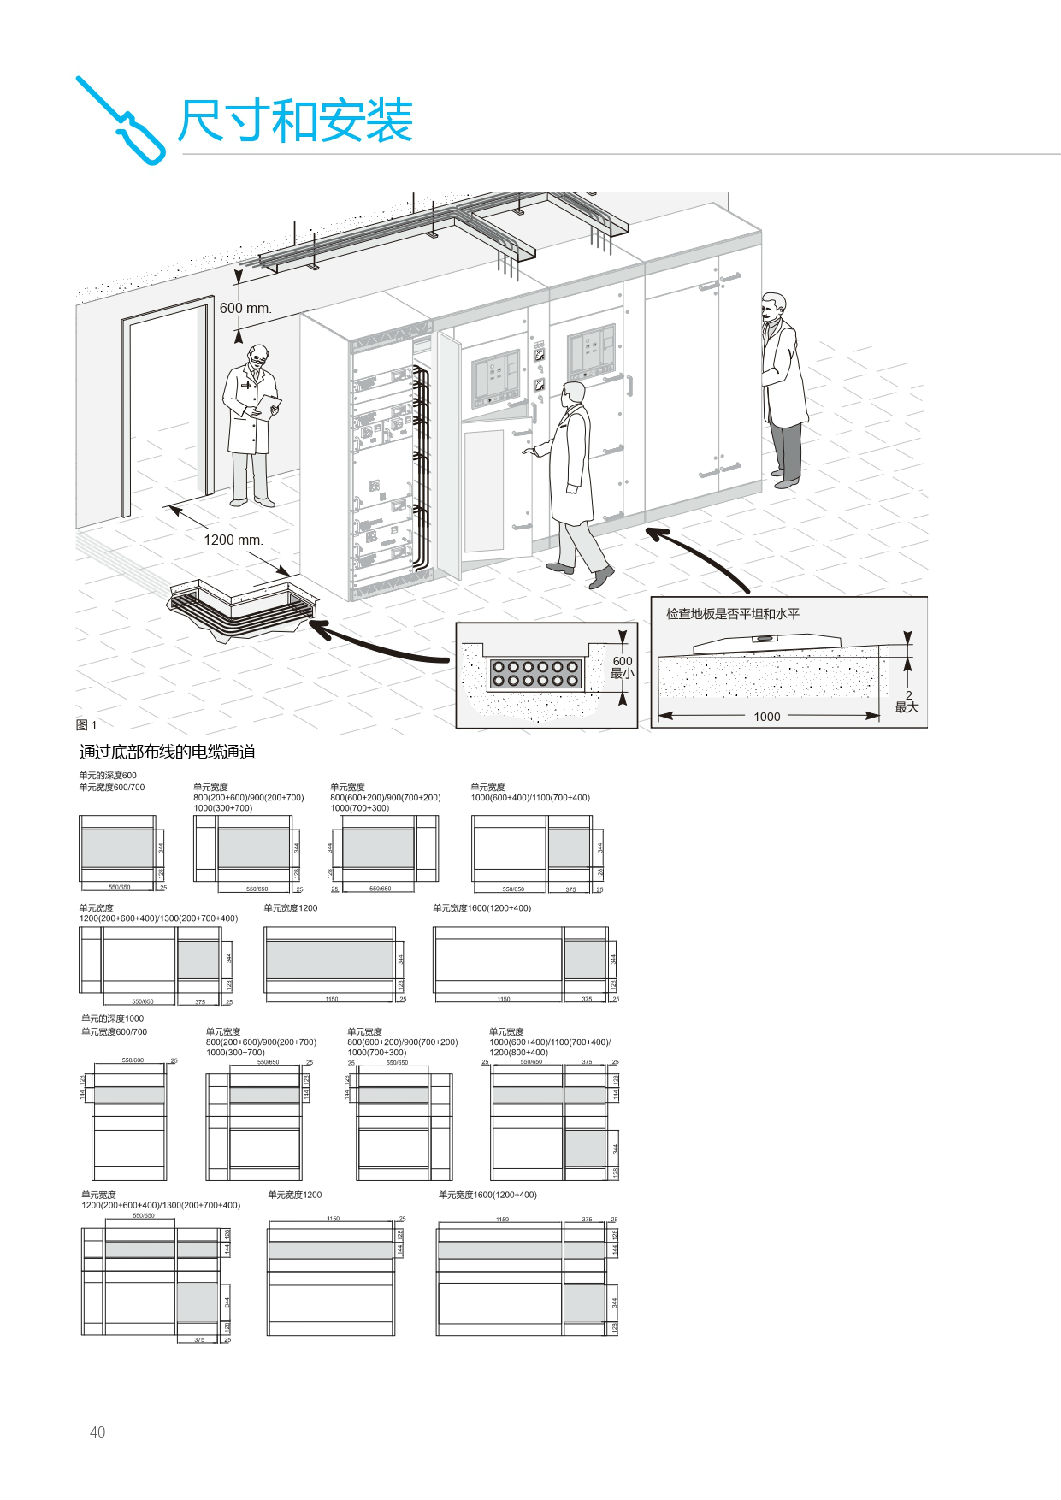 施耐德Blokset低壓柜尺寸和安裝圖   安徽得潤電氣提供